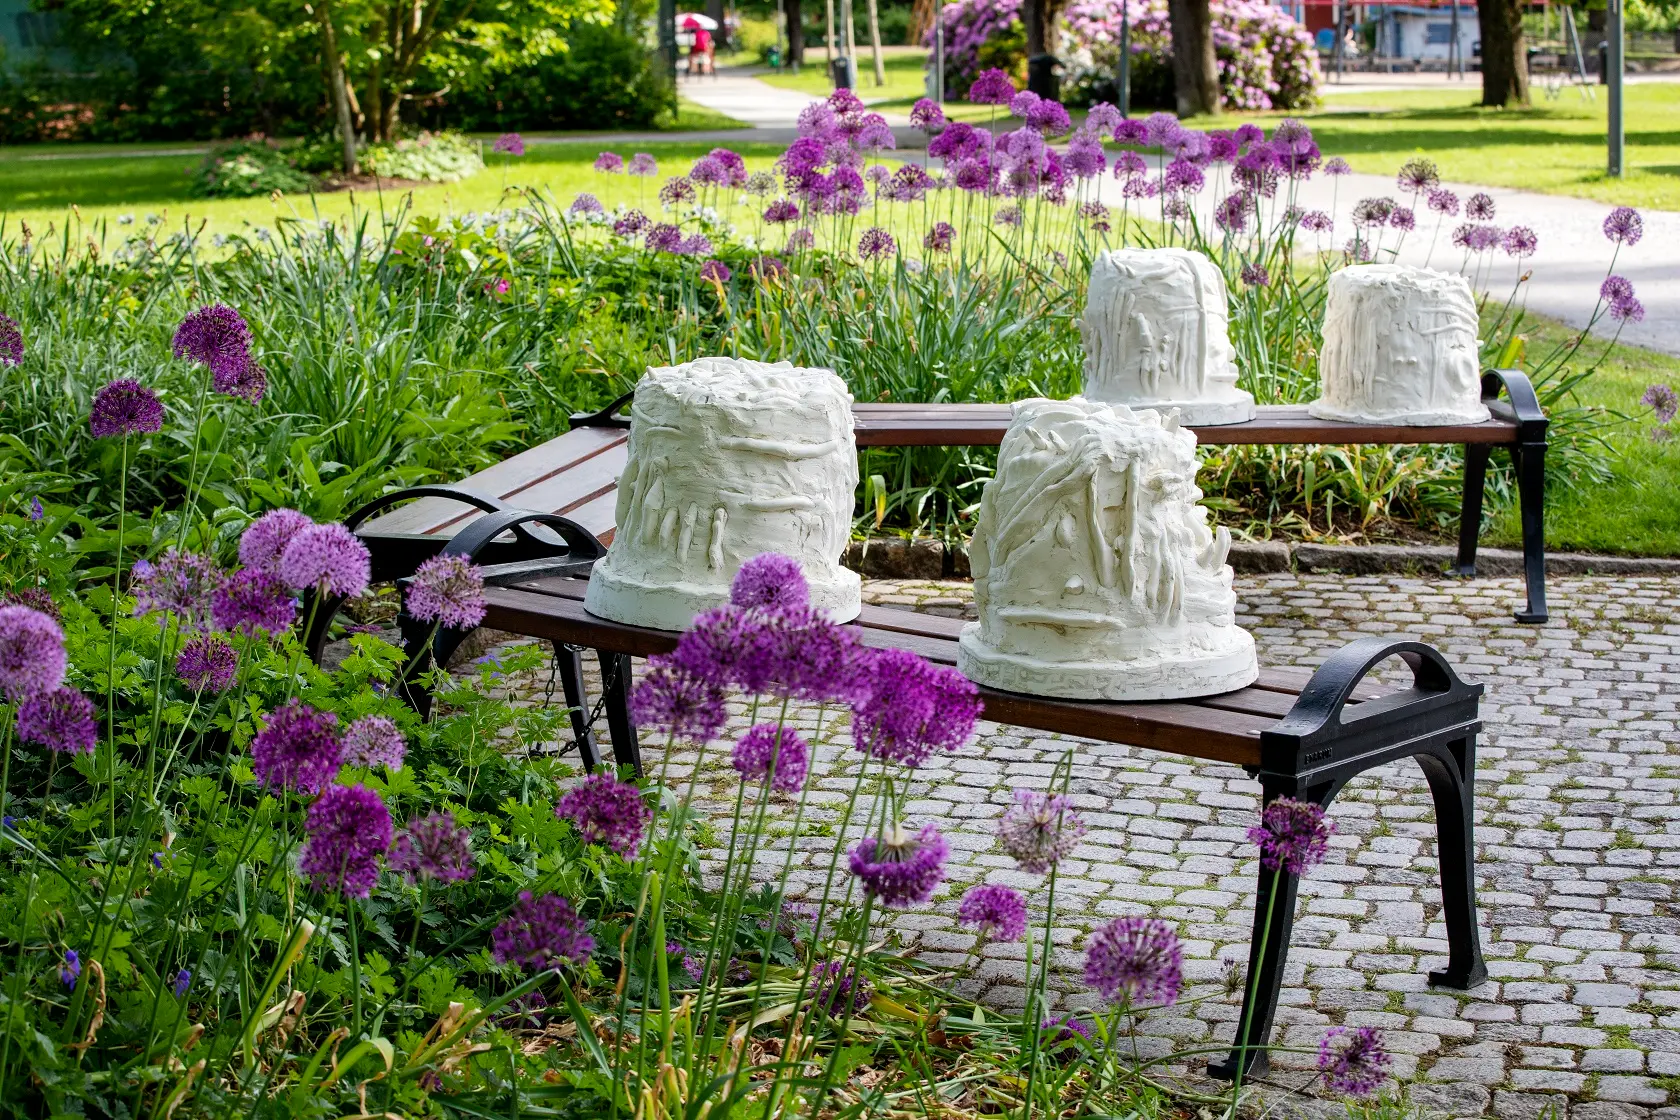 Tre bänkar är placerade som ett U utomhus i stadsparken. På två av bänkarna sitter två vardera vitgula skulpturer. I skulpturerna kan man tyda händer som samtalar i teckenspråk.